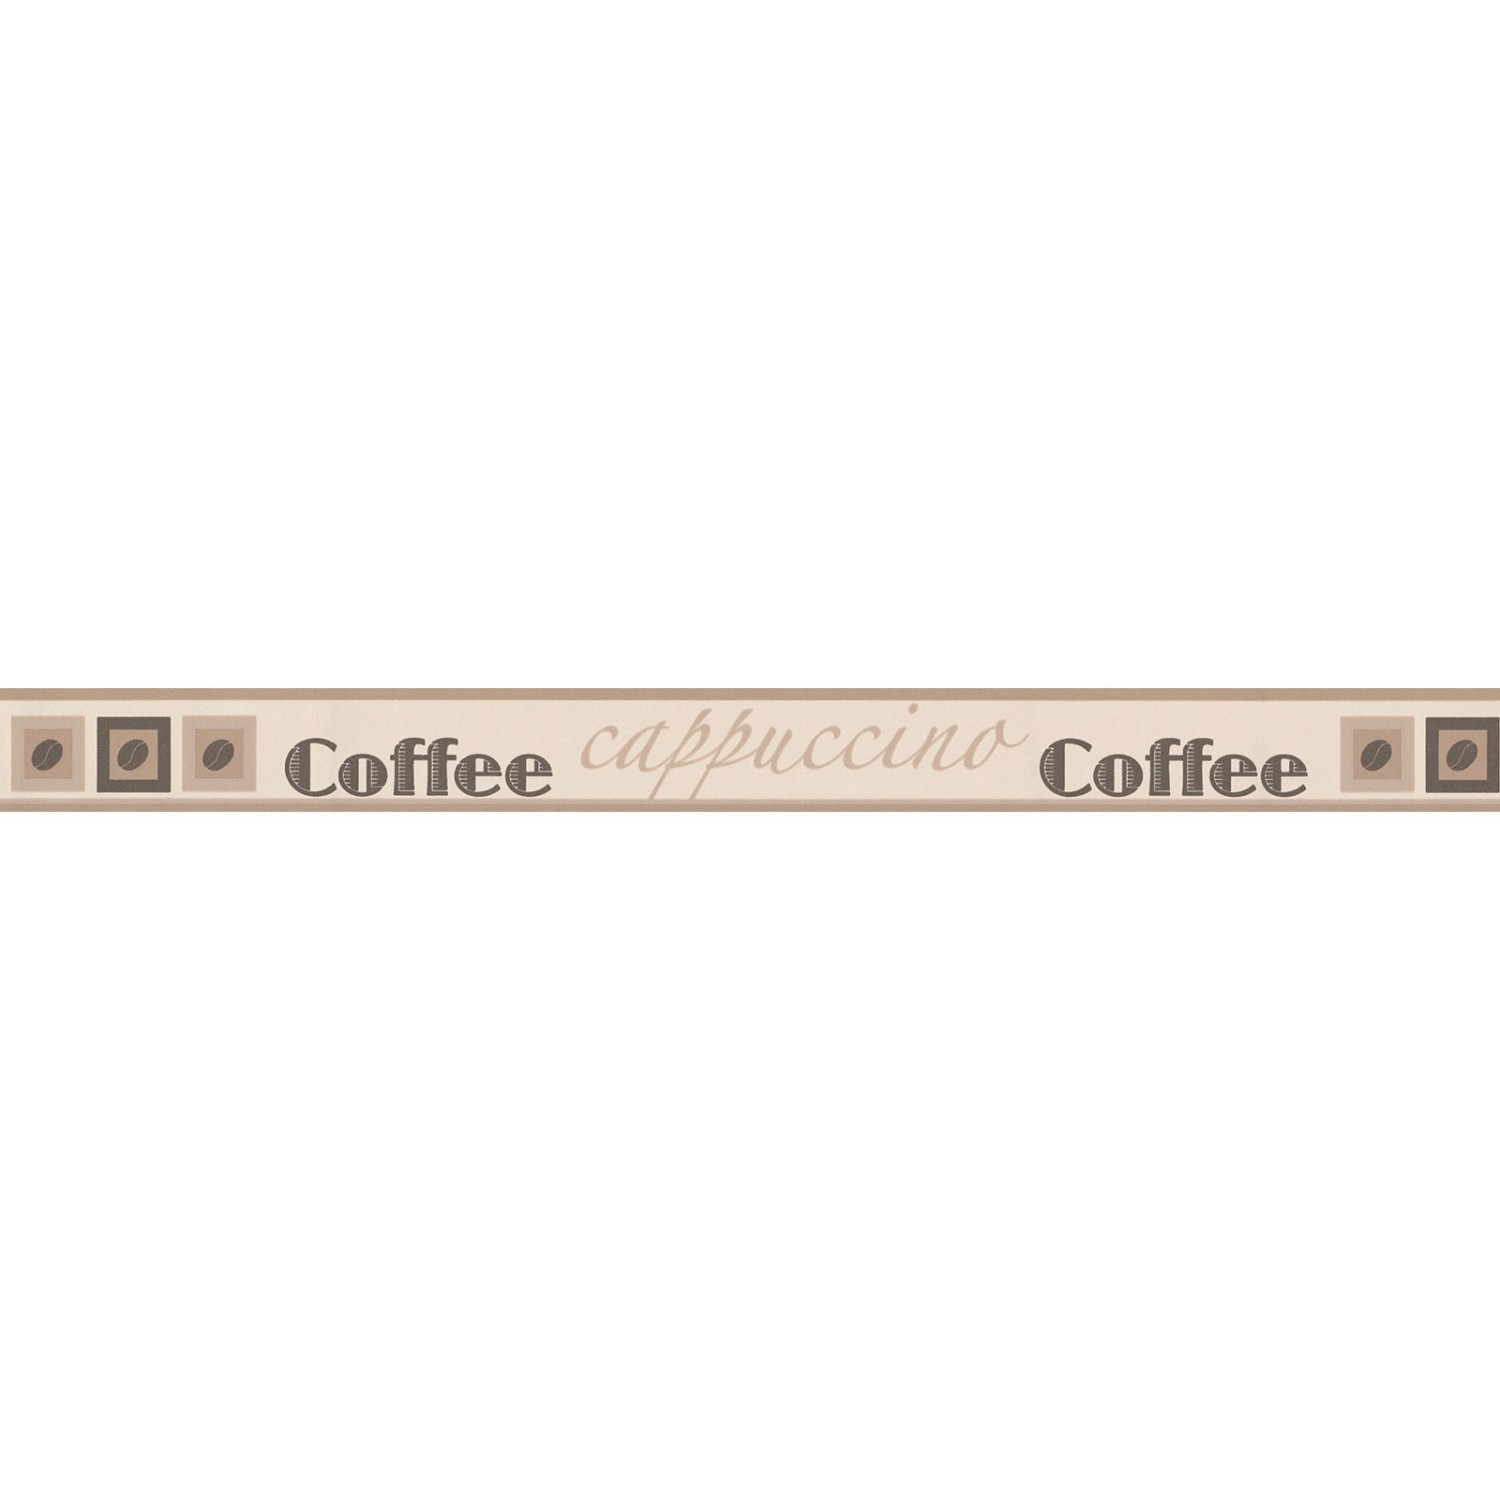 Bricoflor Schmale Tapetenborte für Küche Selbstklebende Tapeten Bordüre mit Kaffee Design in Beige Braun Cafe Wandbordür